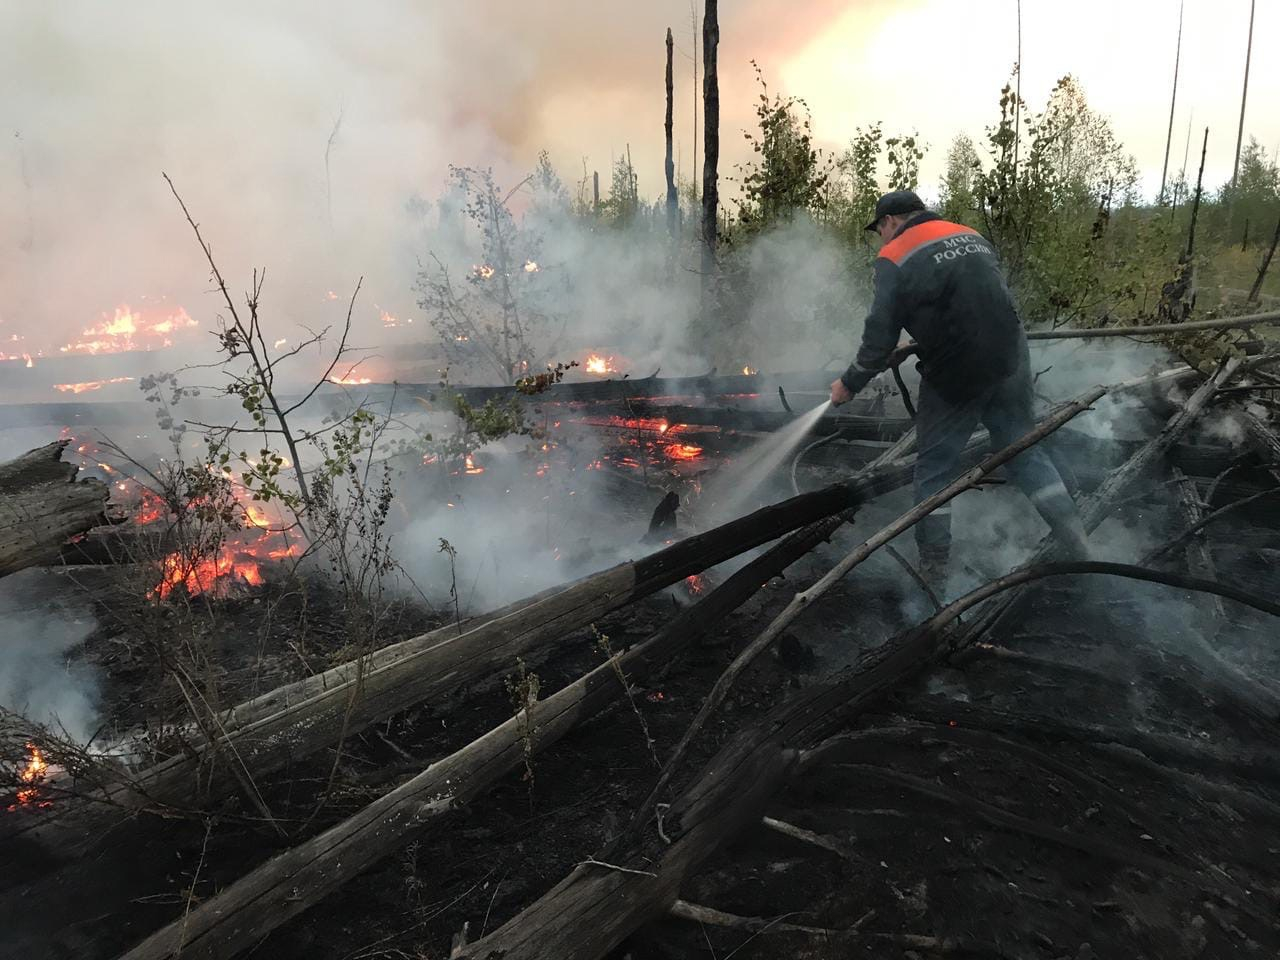 Нижегородские спасатели тушат пожар в заповеднике Мордовии. 6 ярких кадров